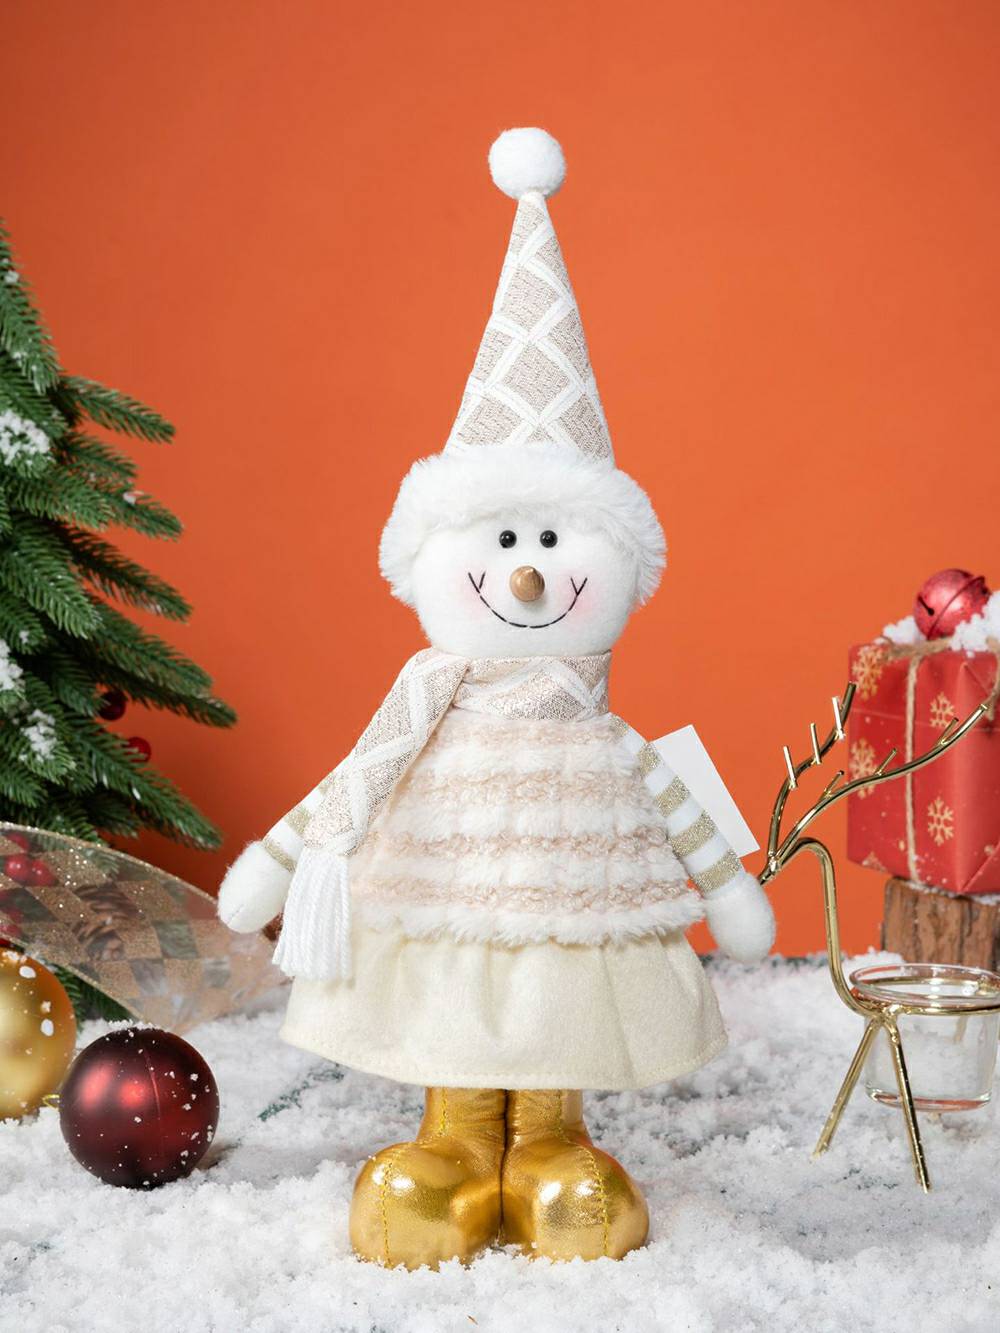 Weihnachtsplüsch-Elfen-Rentier- und Schneemann-Rudolph-Puppe